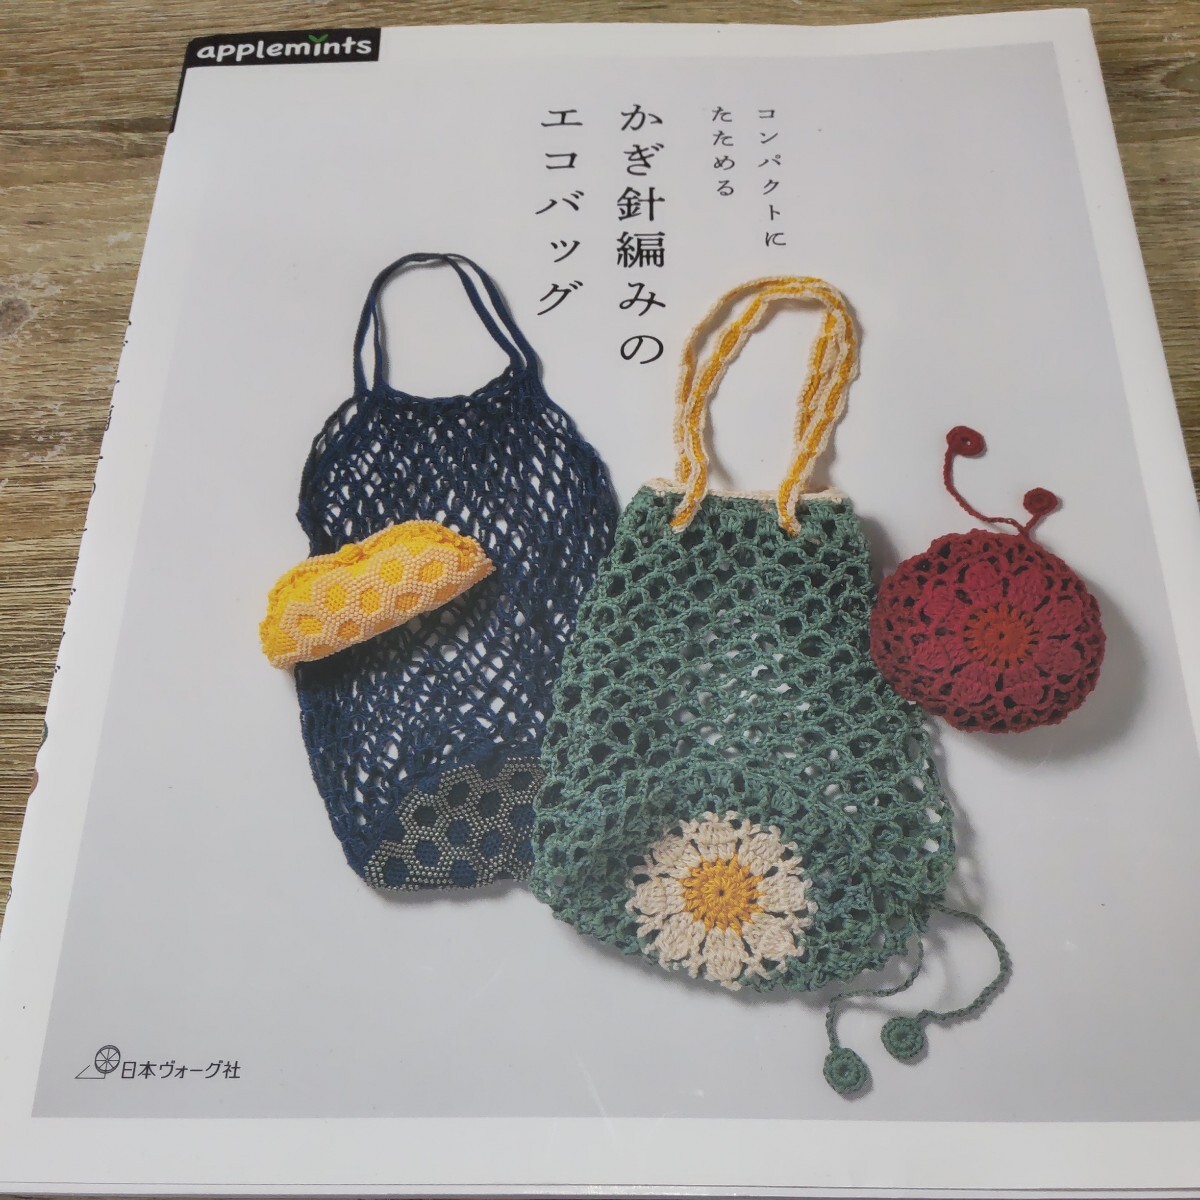 コンパクトにたためる かぎ針編みのエコバッグ アップルミンツ 手編み ハンドメイドの画像1